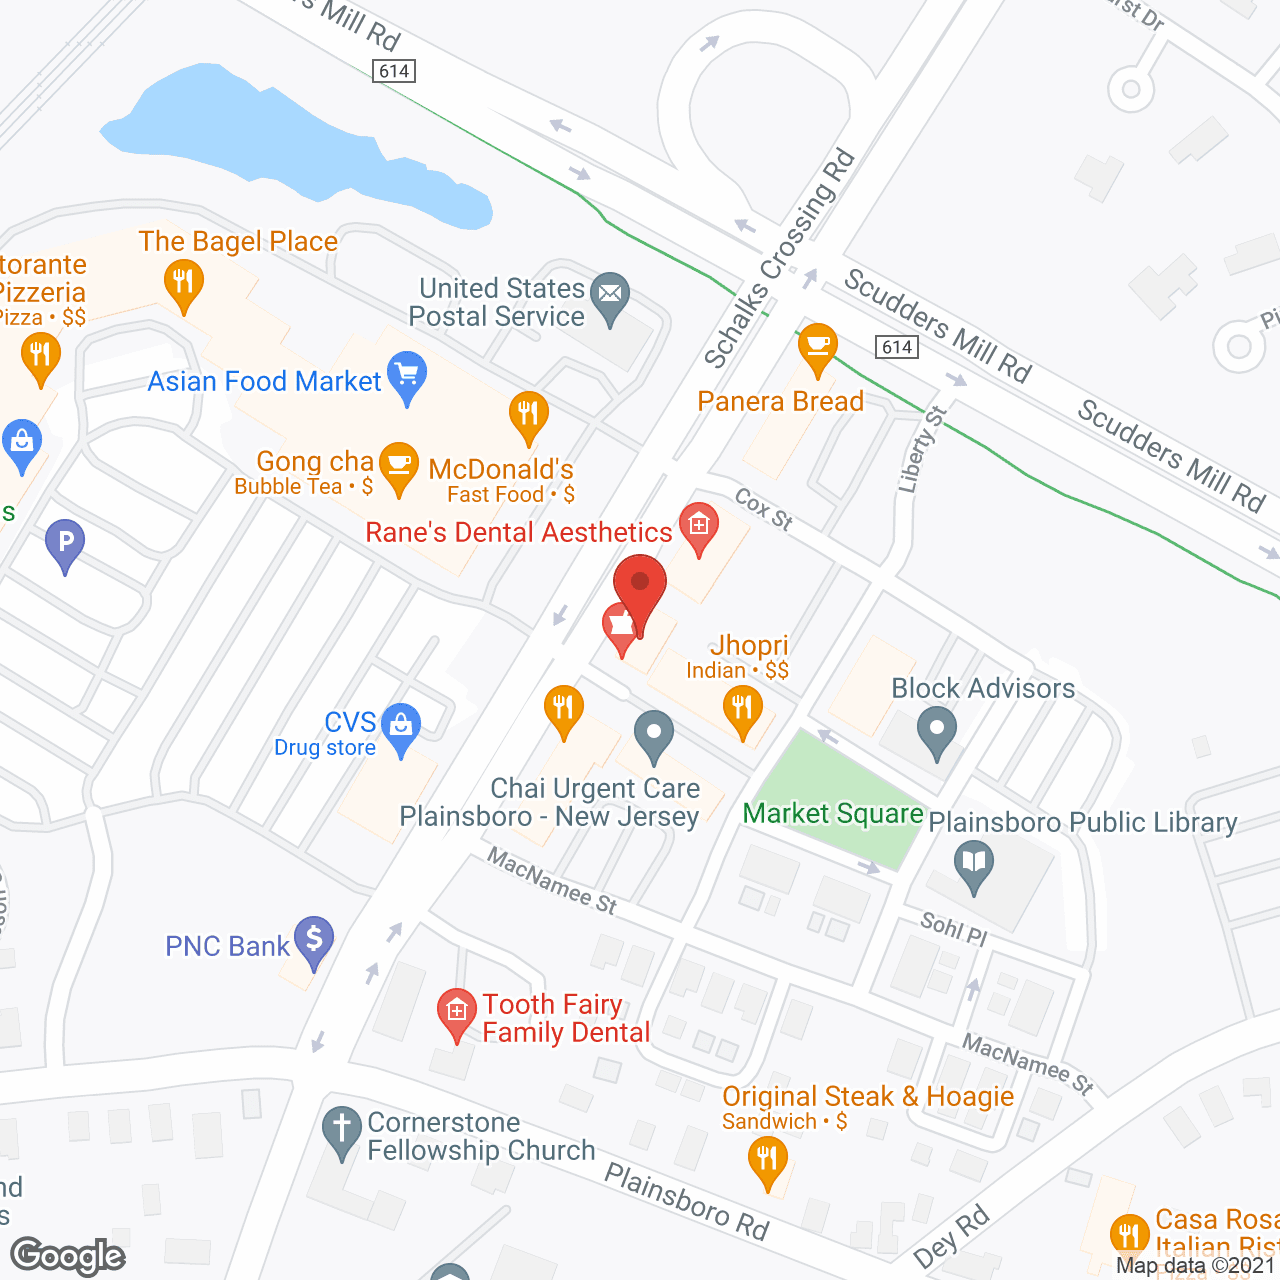 TheKey Princeton in google map